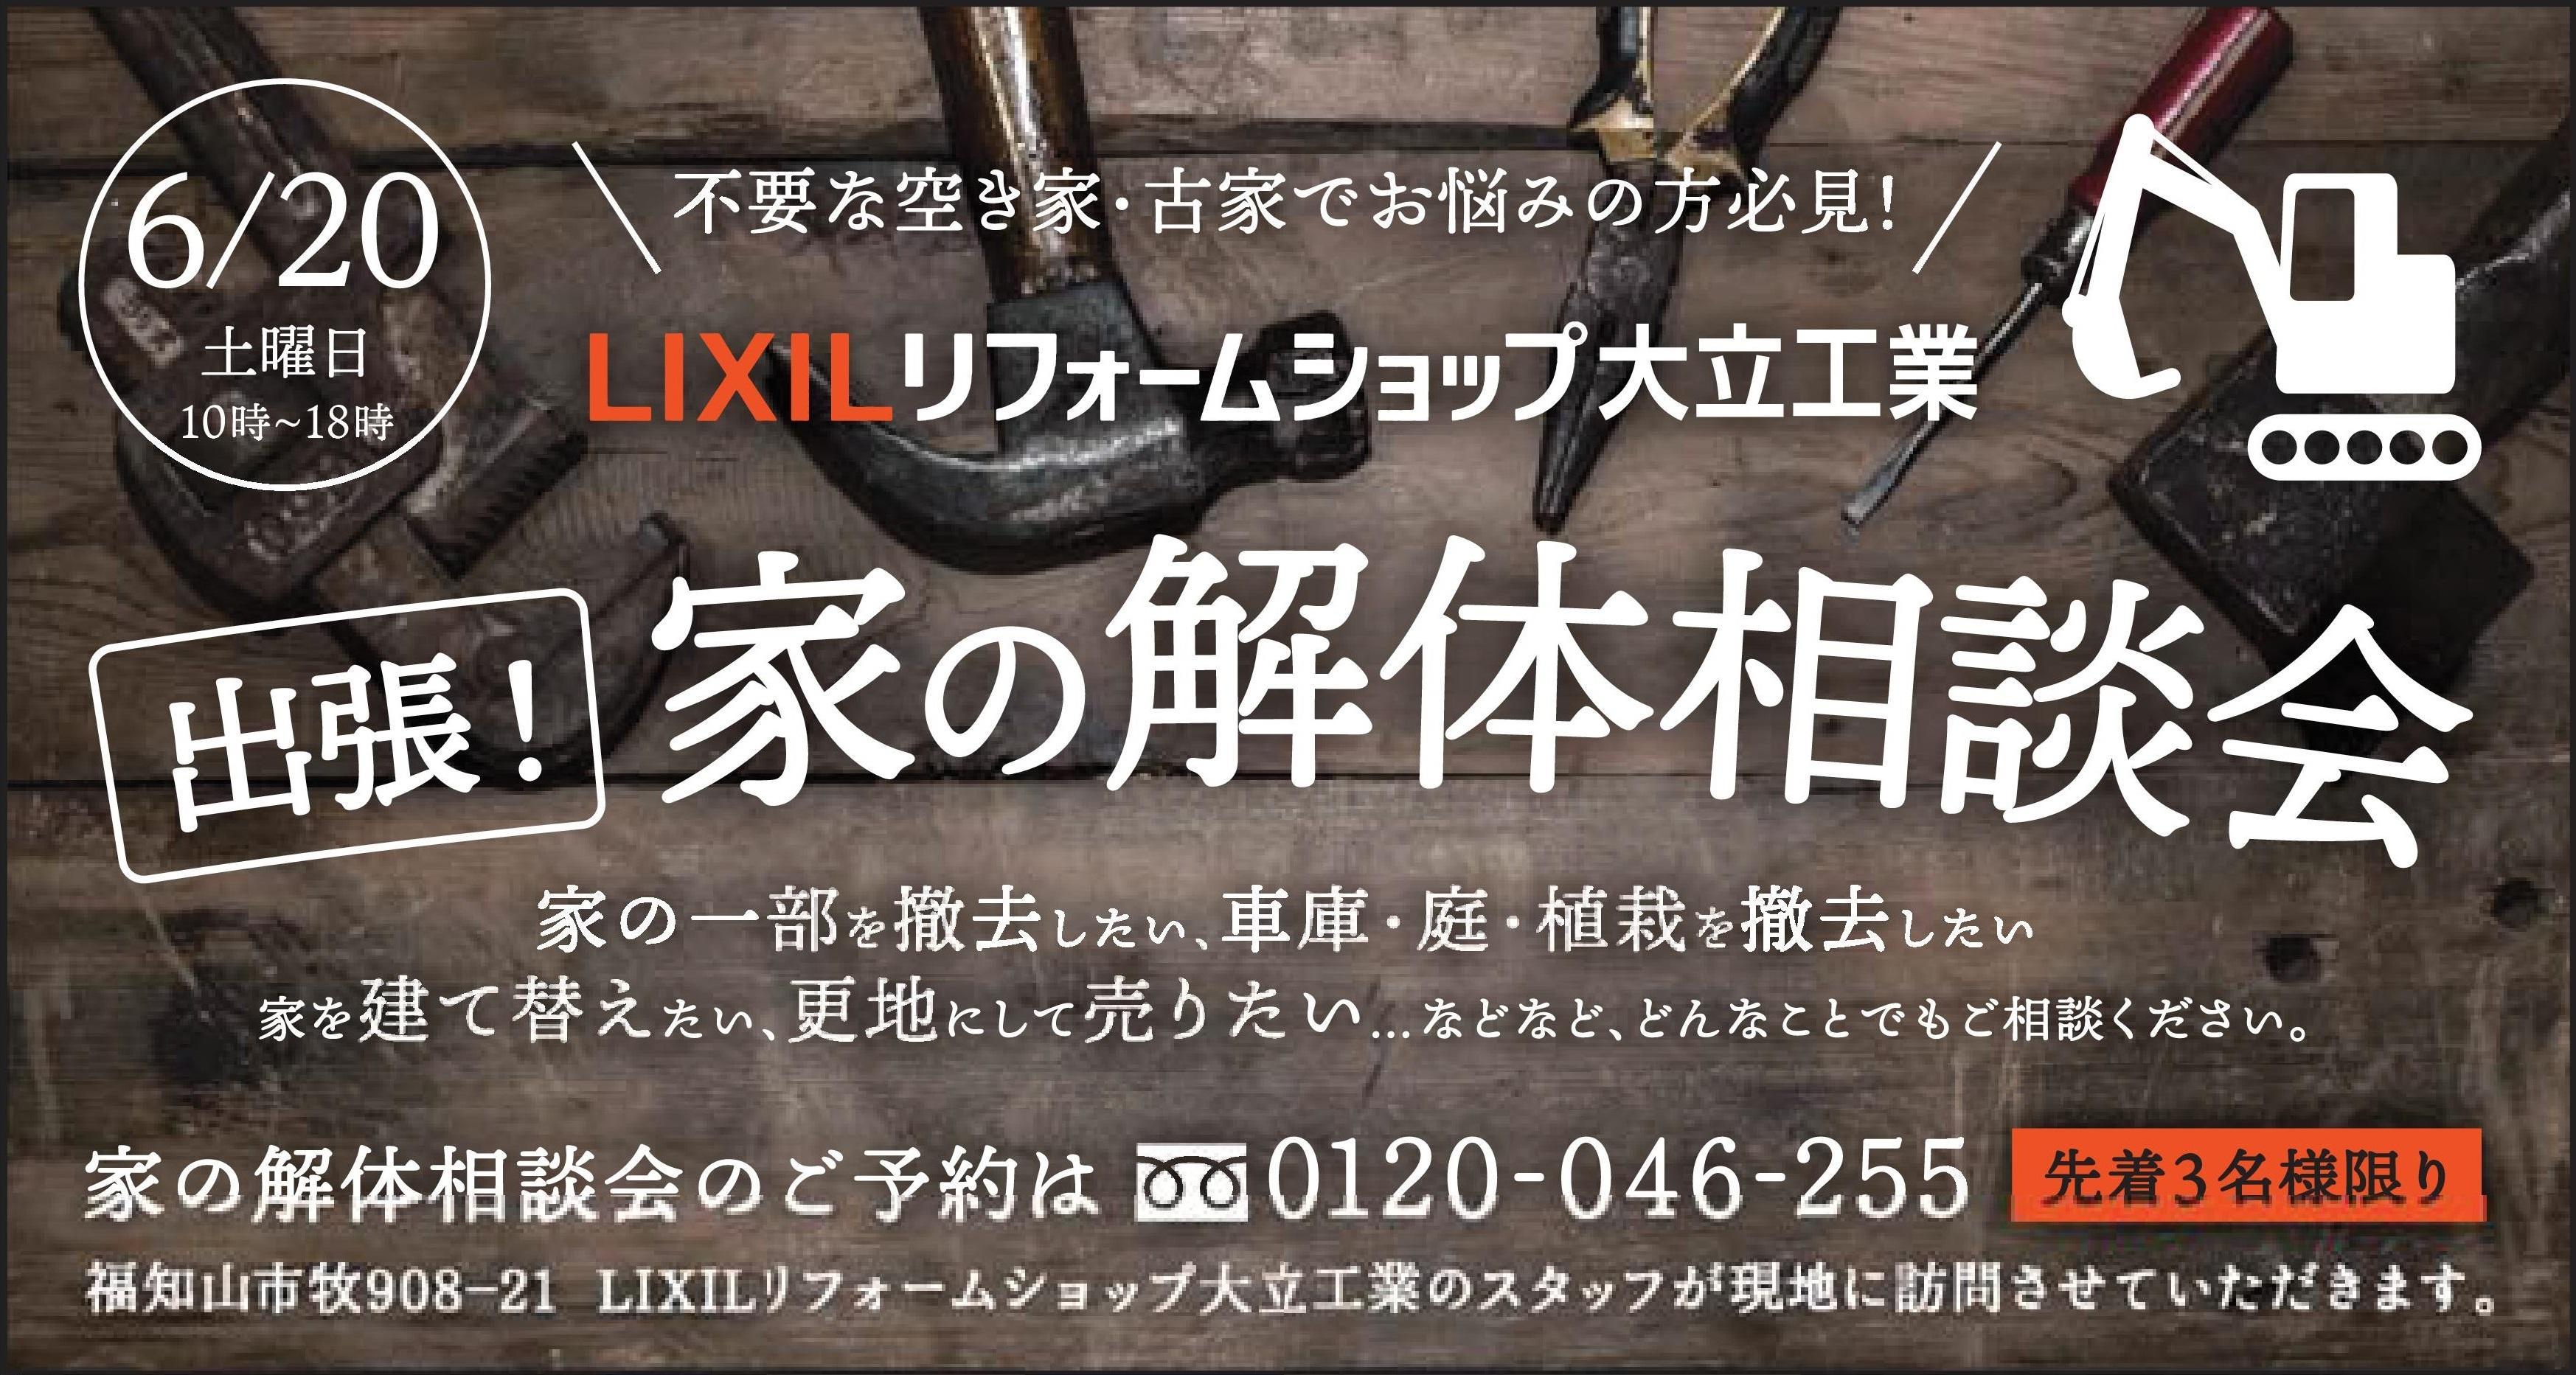 https://www.lixil-reformshop.jp/shop/SP00001006/photos/359bf6d360e1680284720b027dca89386c9e8436.jpg